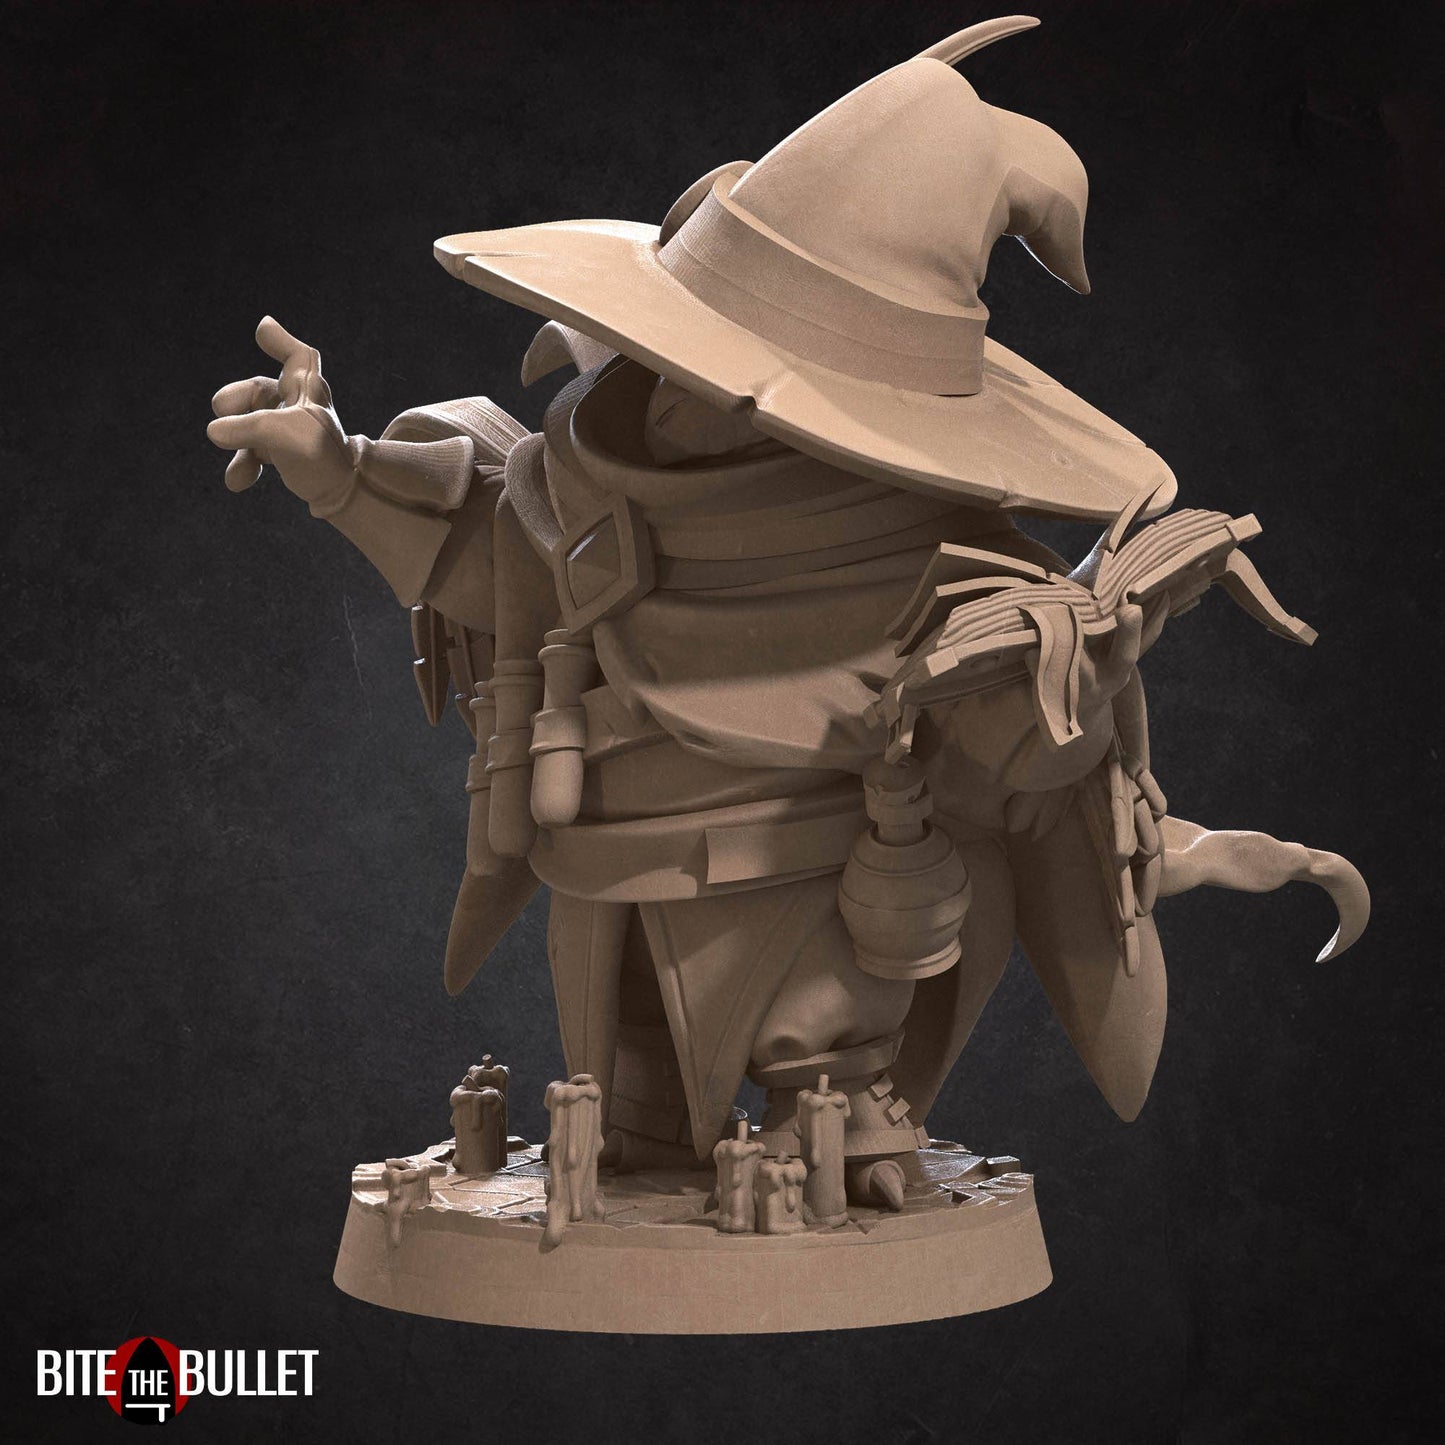 Owlfolk Wizard | D&D Miniature TTRPG Character | Bite the Bullet - Tattles Told 3D